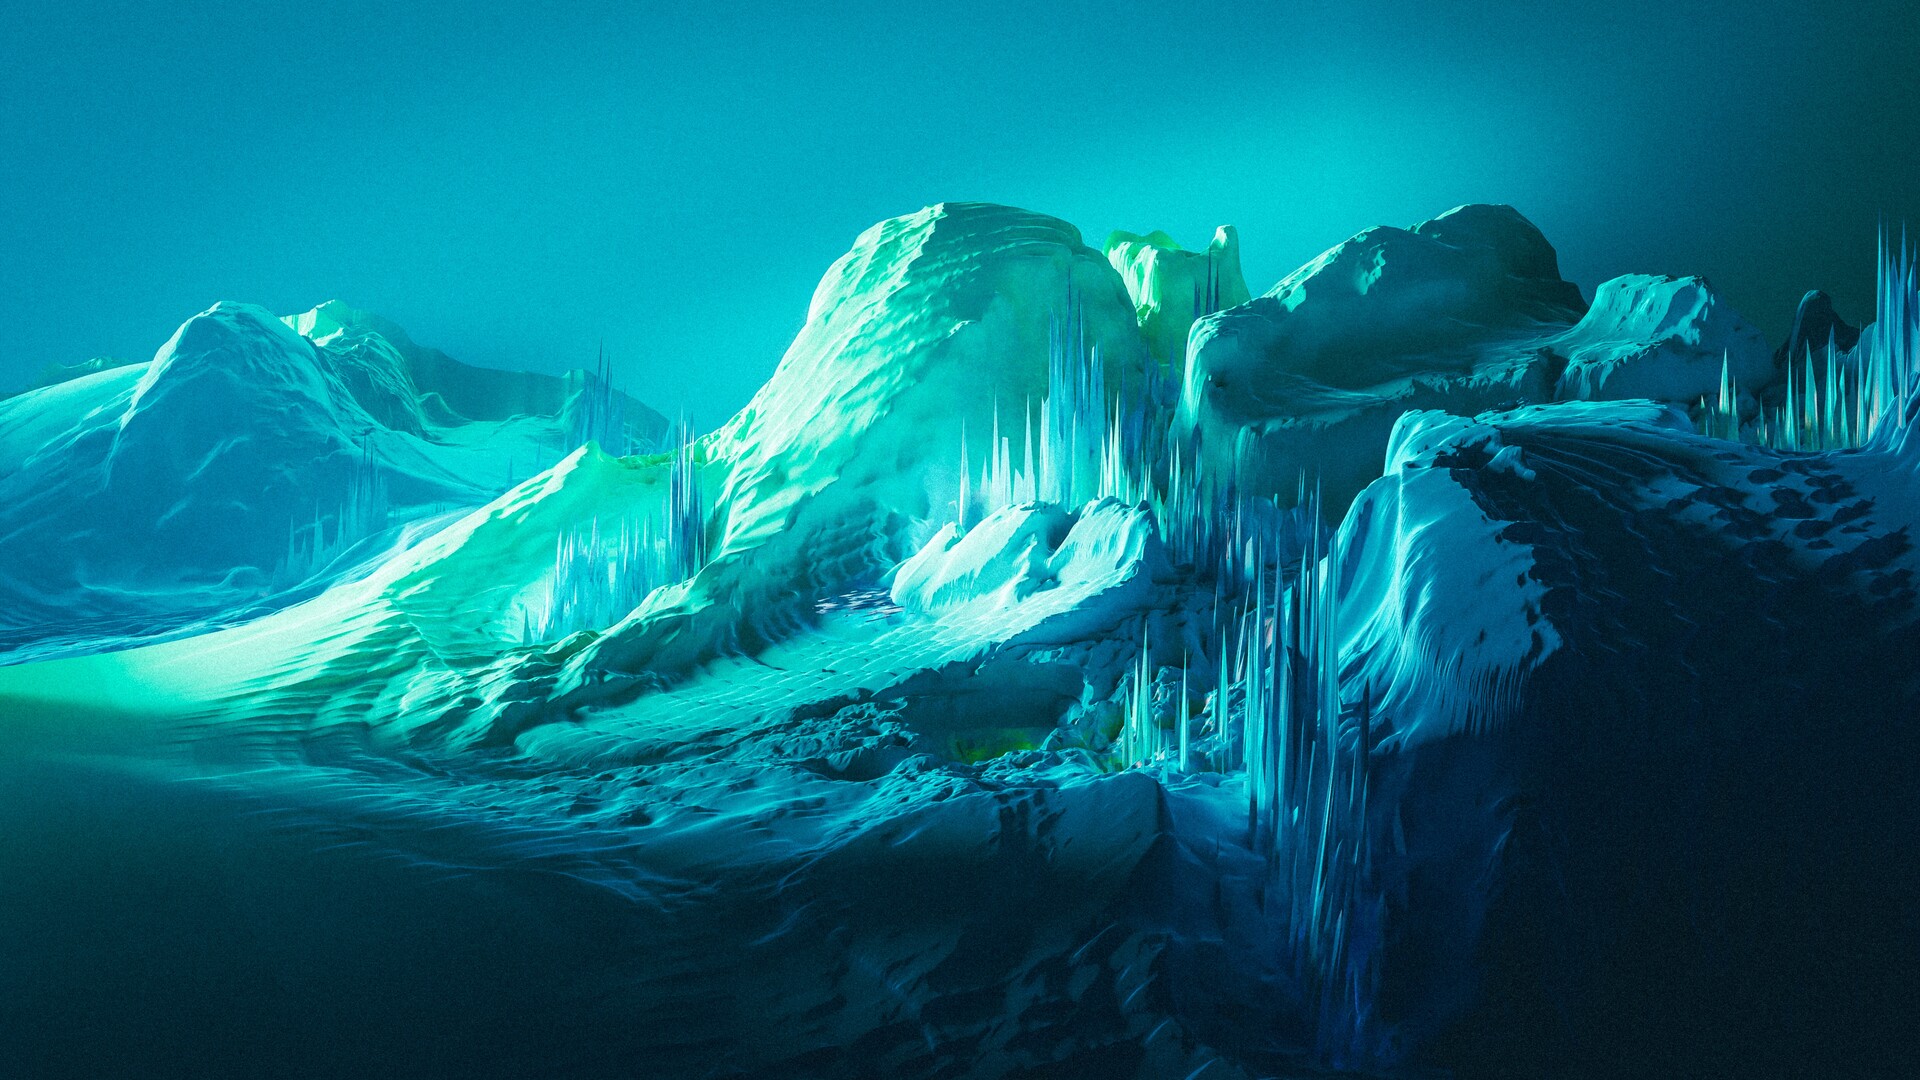 Artistic Ice HD Wallpaper by Steven Oberman